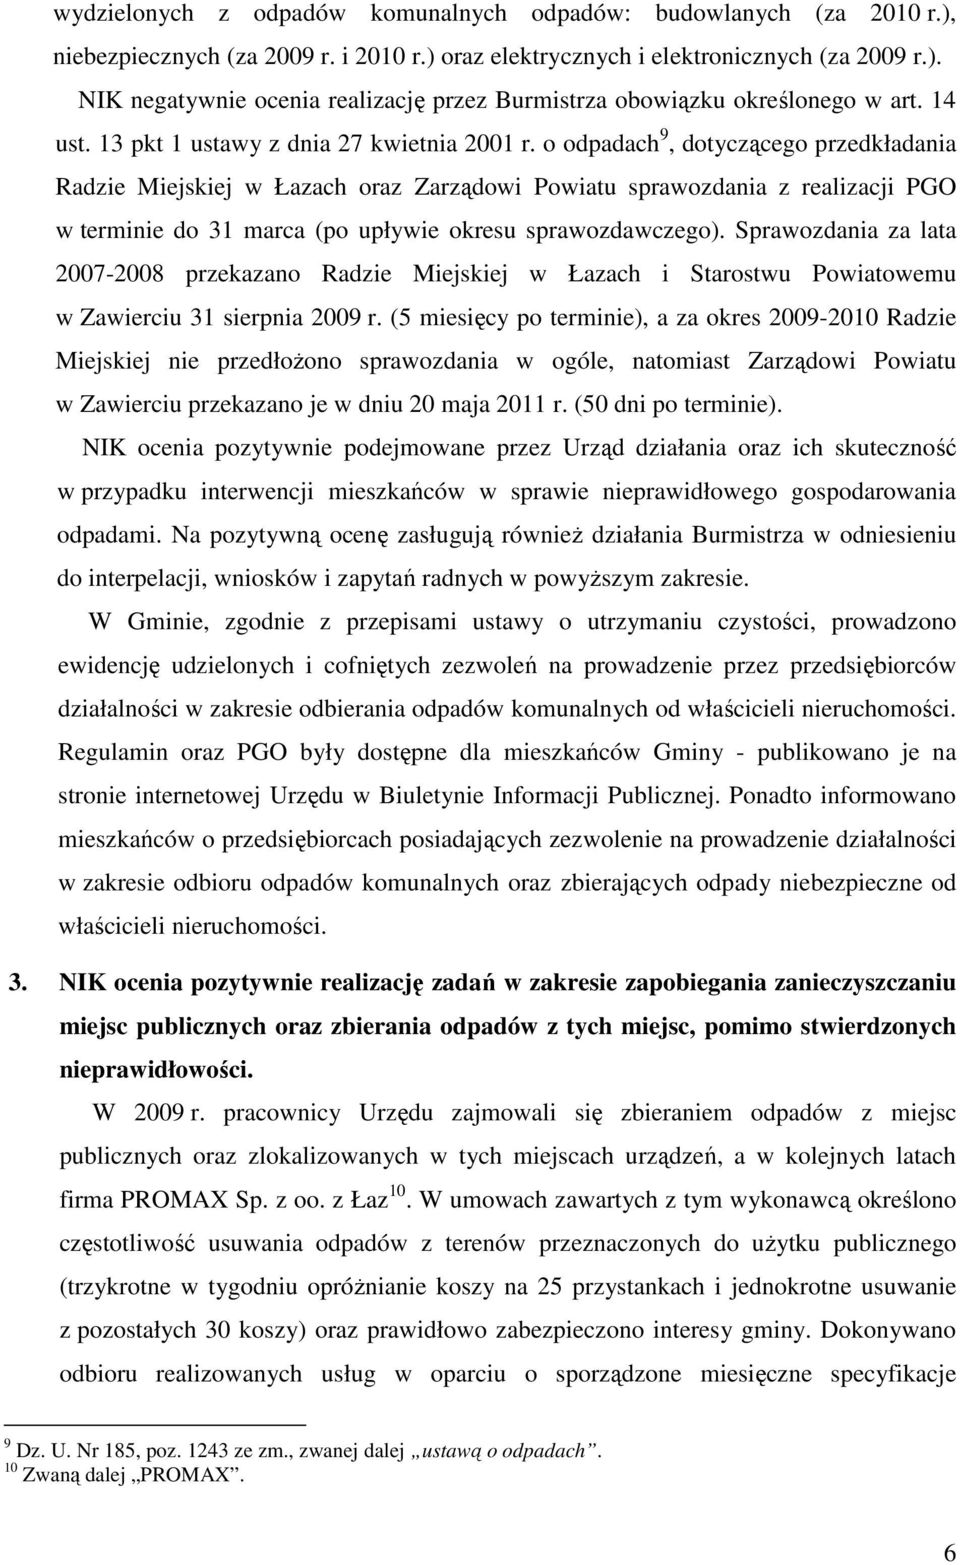 o odpadach 9, dotyczącego przedkładania Radzie Miejskiej w Łazach oraz Zarządowi Powiatu sprawozdania z realizacji PGO w terminie do 31 marca (po upływie okresu sprawozdawczego).